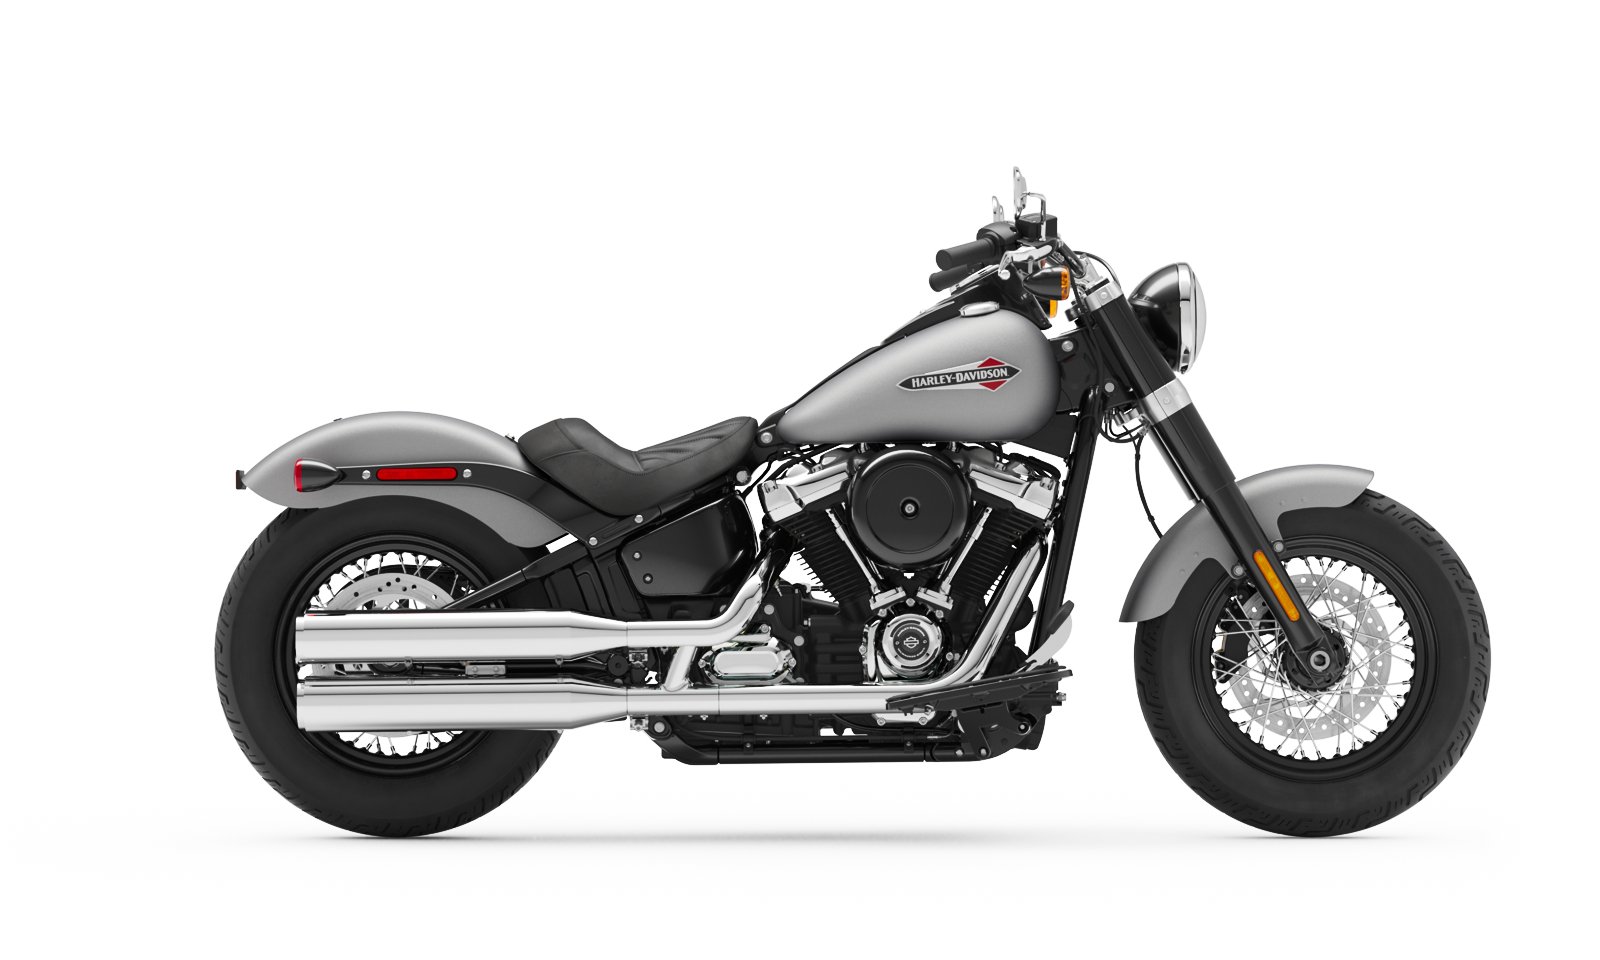 2020 Softail Slim Motorcycle Harley Davidson Osterreich